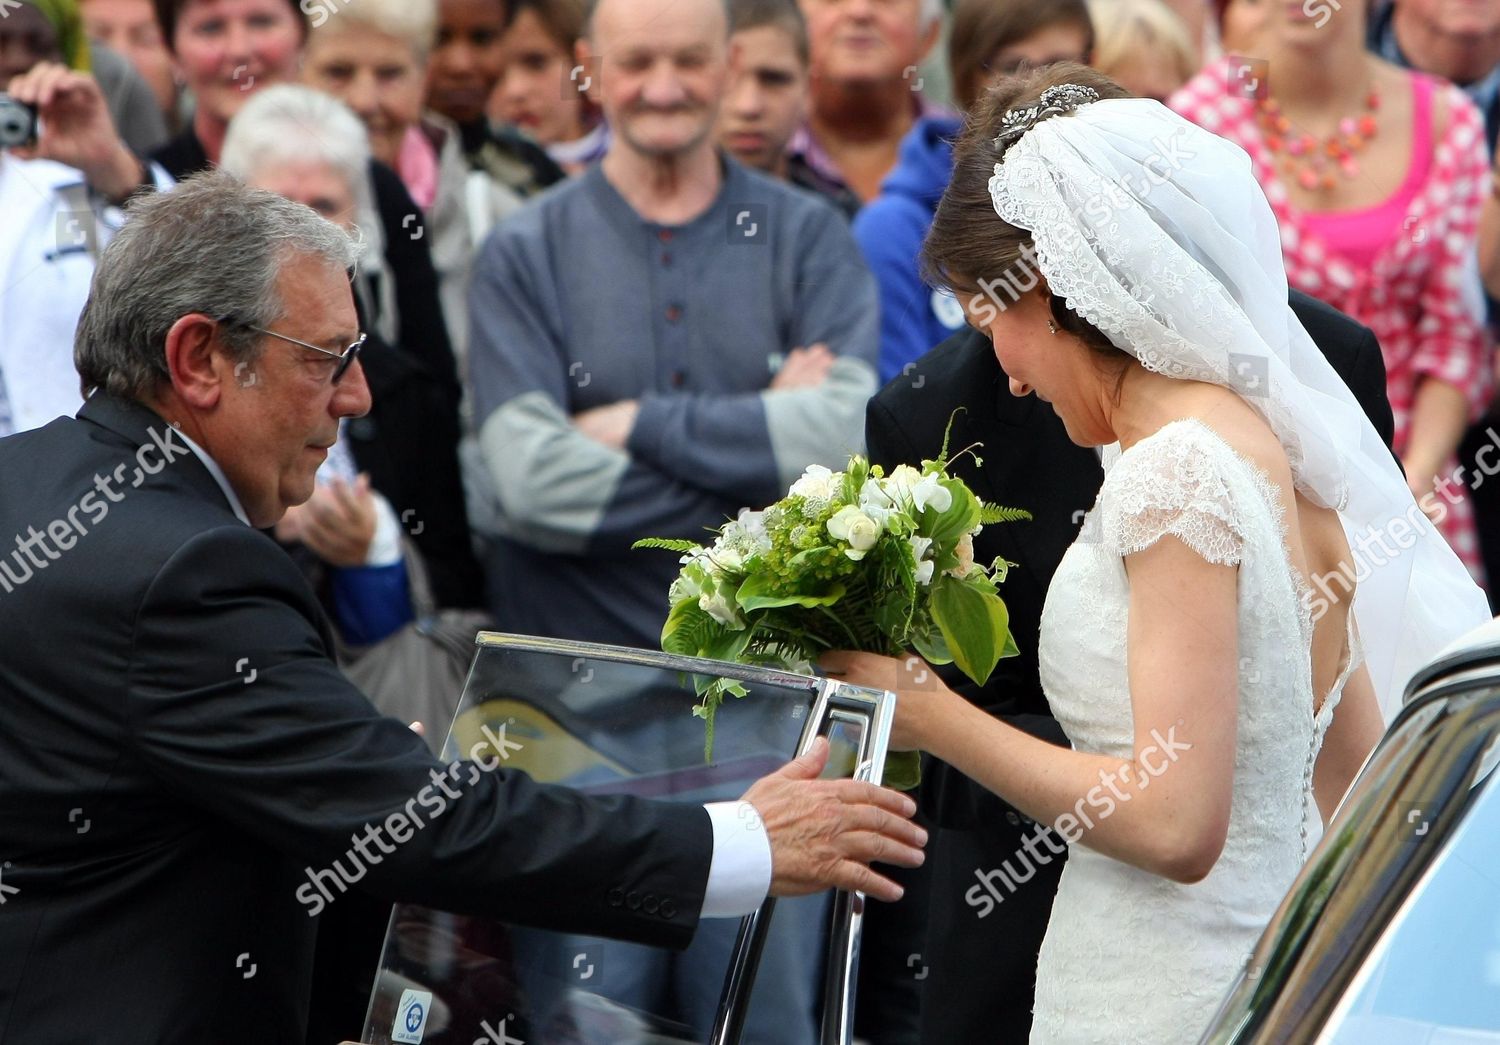 belgium-bastogne-wedding-helene-dudekem-dacoz-jun-2011-shutterstock-editorial-8278199c.jpg